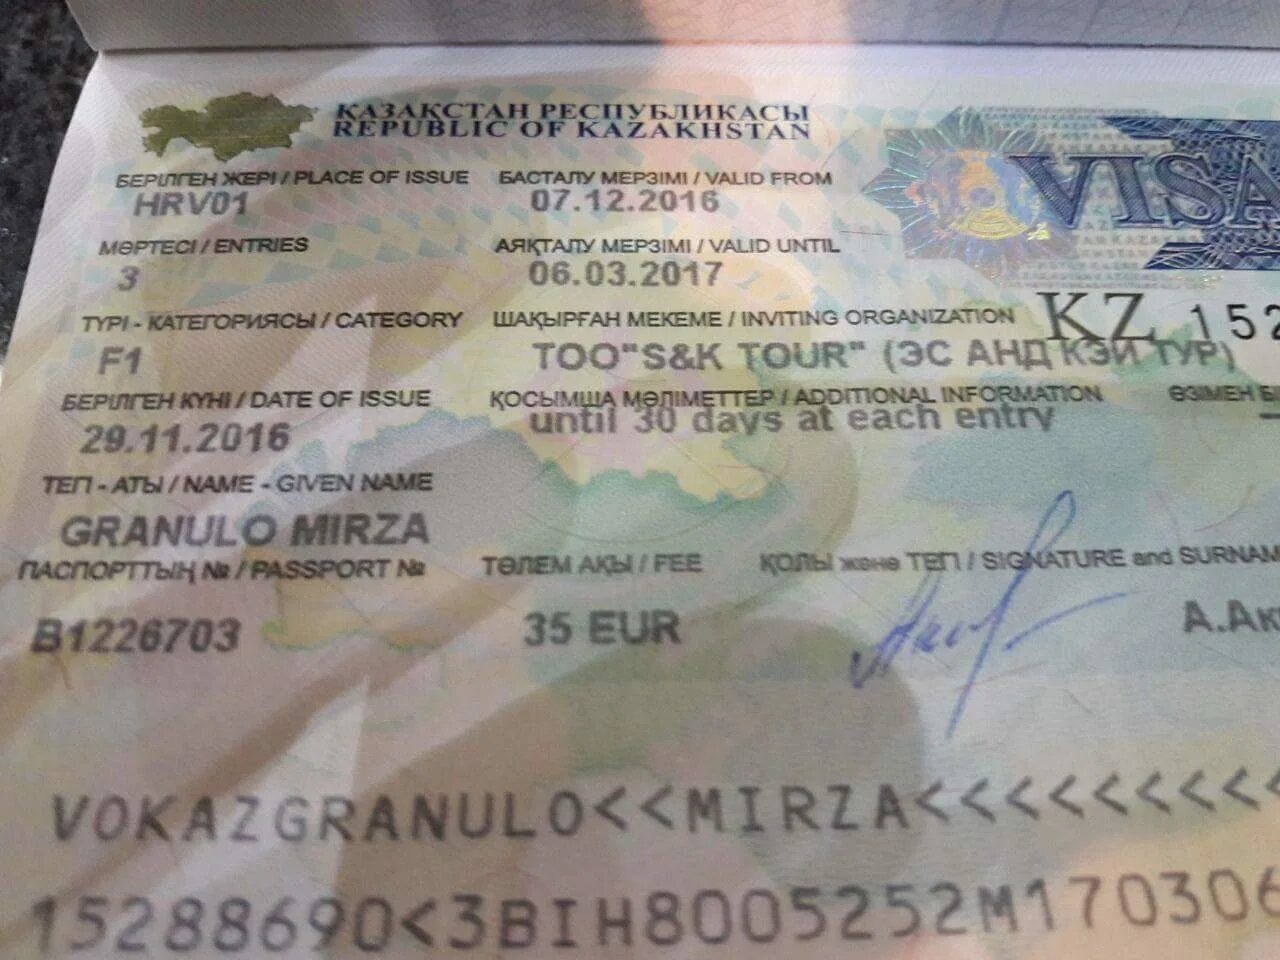 В казахстан можно без визы